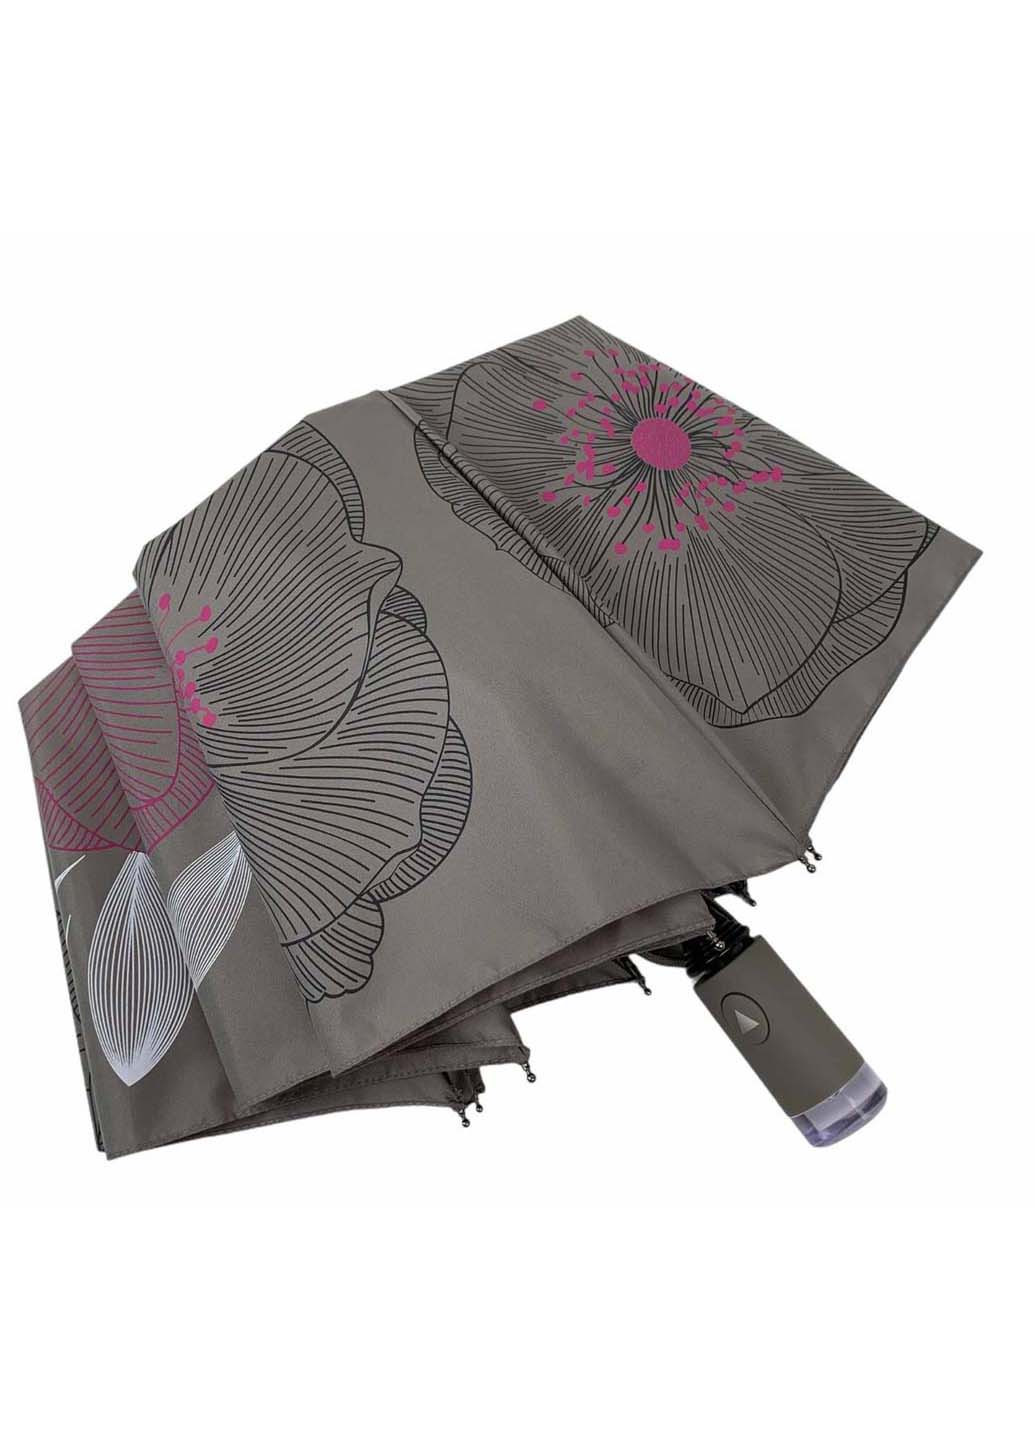 Жіночий складний парасолька-напівавтомат з принтом квітів Flagman складний сіра